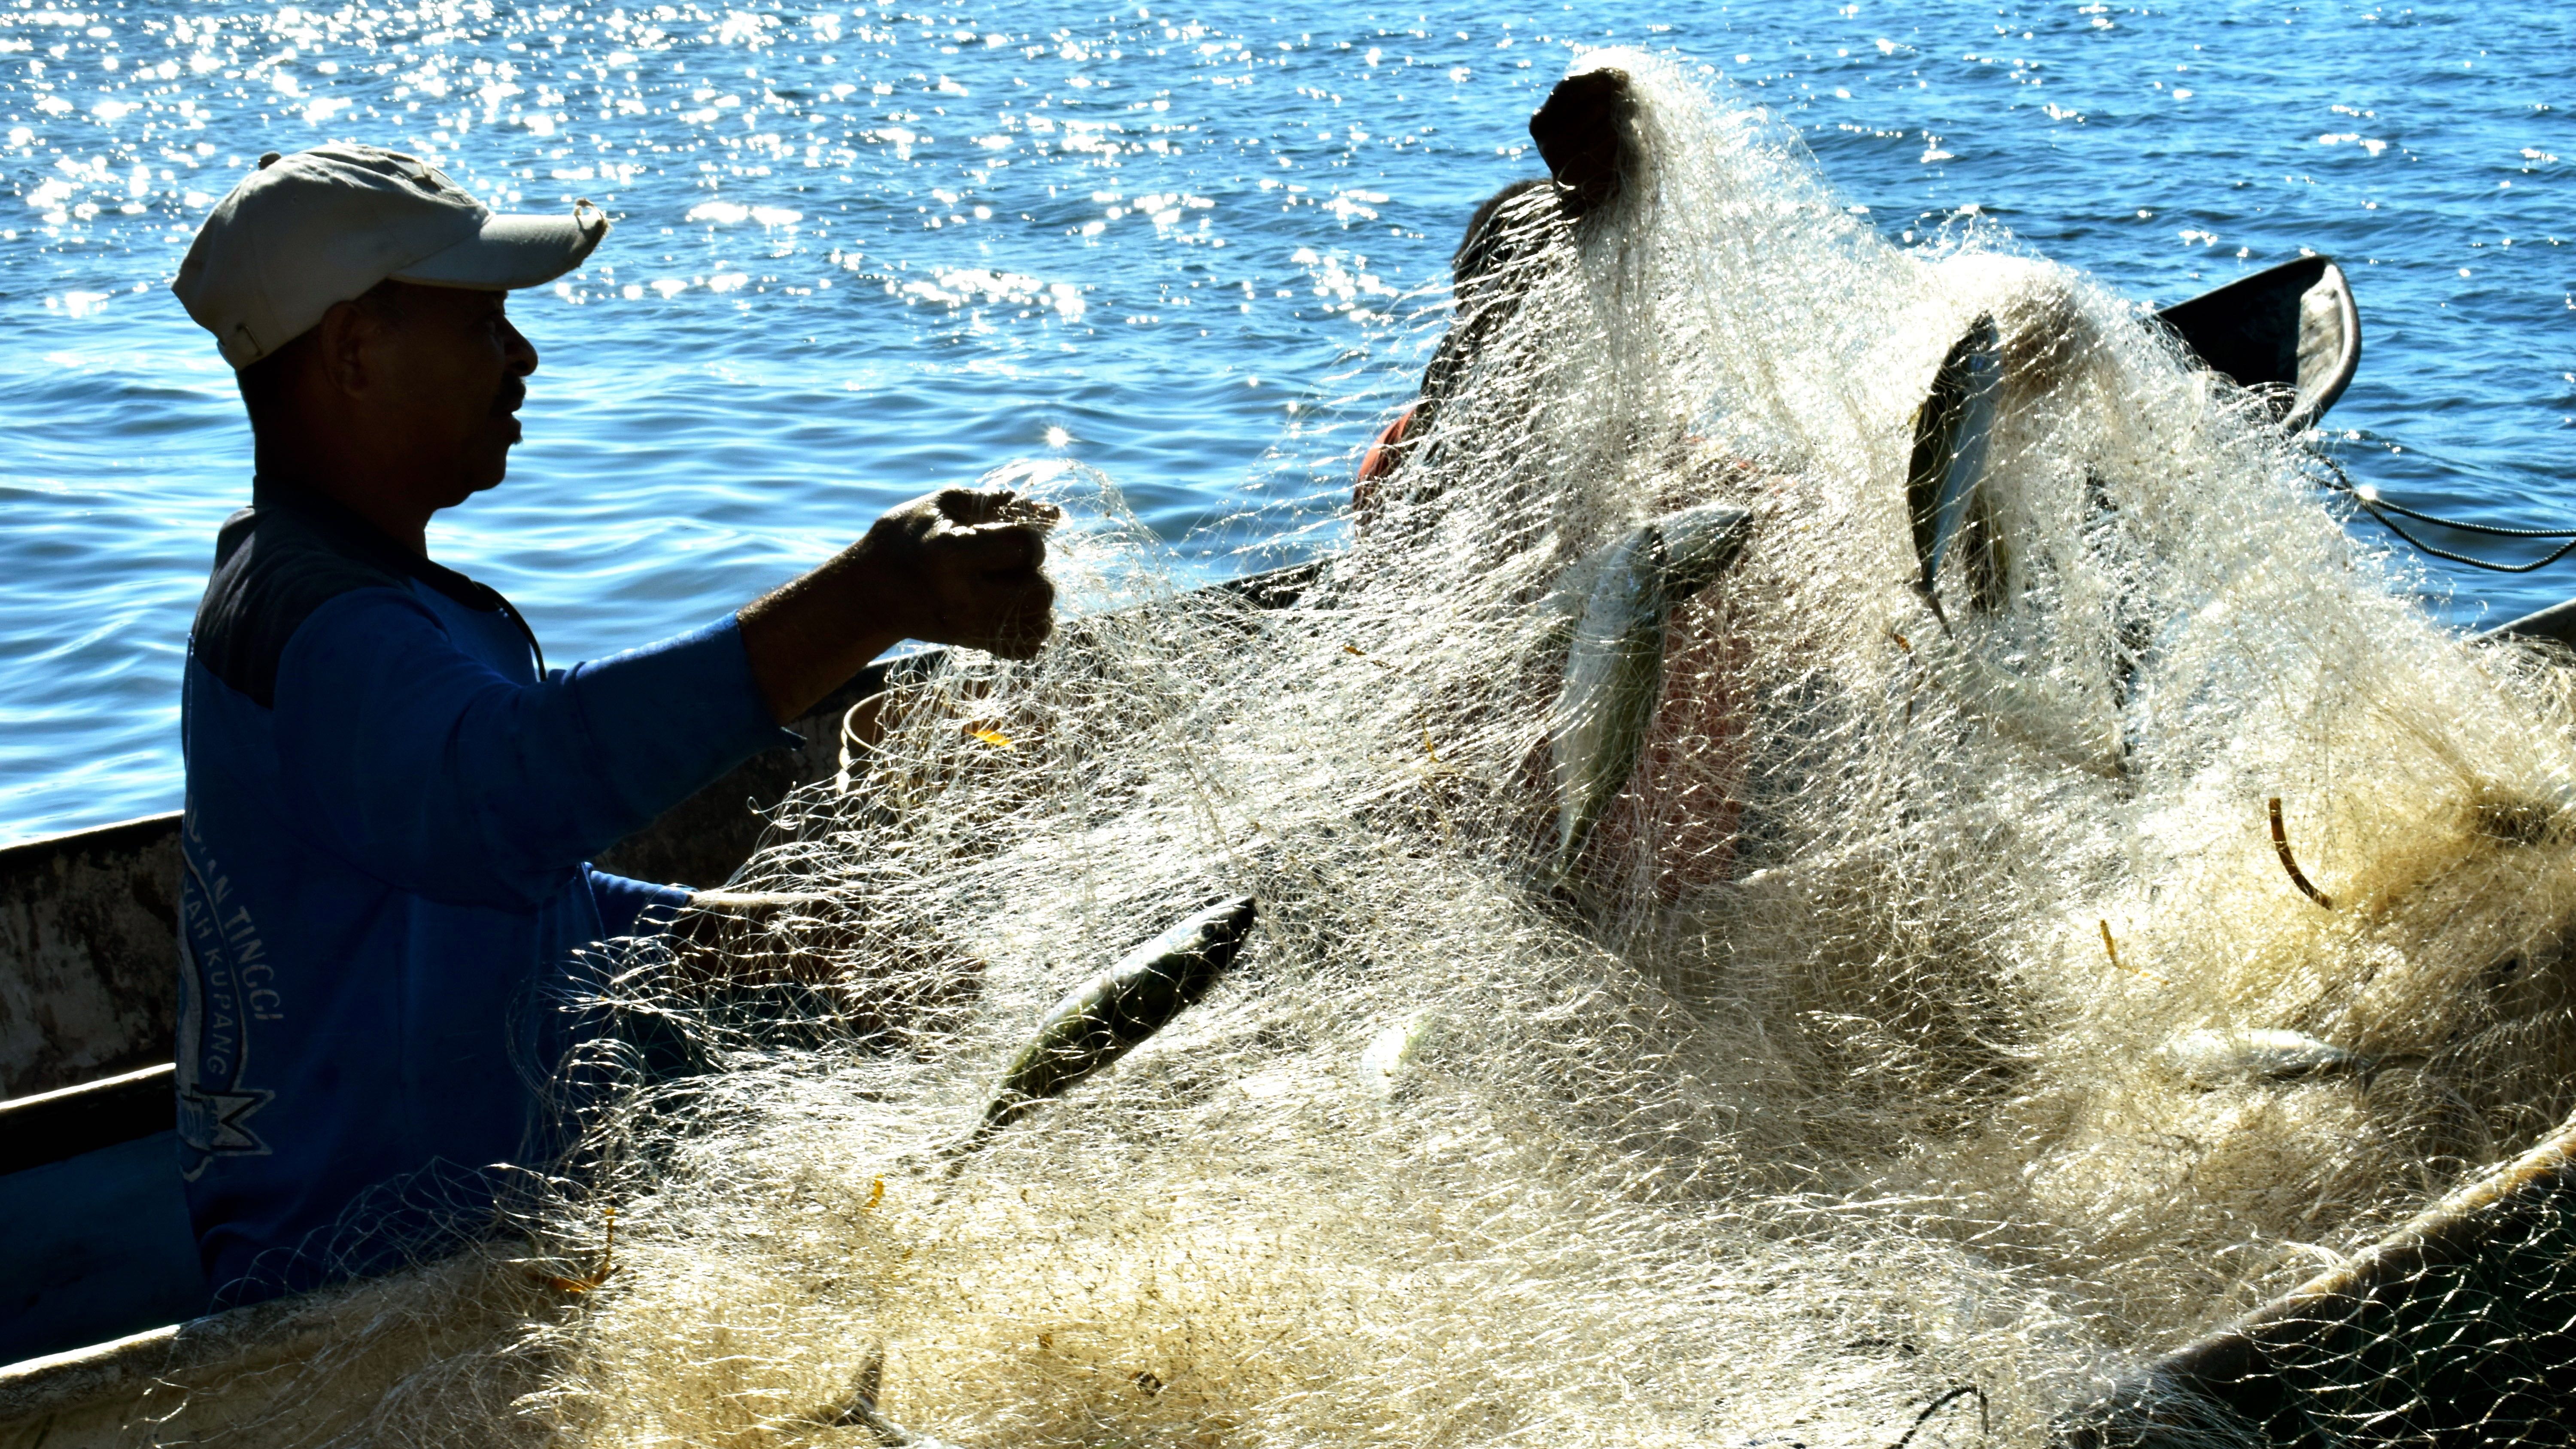 Pukat nelayan desa Lamatokan kecamatan Ile ApeTimur kabupaten Lembata yang dipenuhi ikan kembung yang dtangkap saat subuh di perairan Teluk Hadakewa | Foto: Ebed de Rosary/Mongabay Indonesia